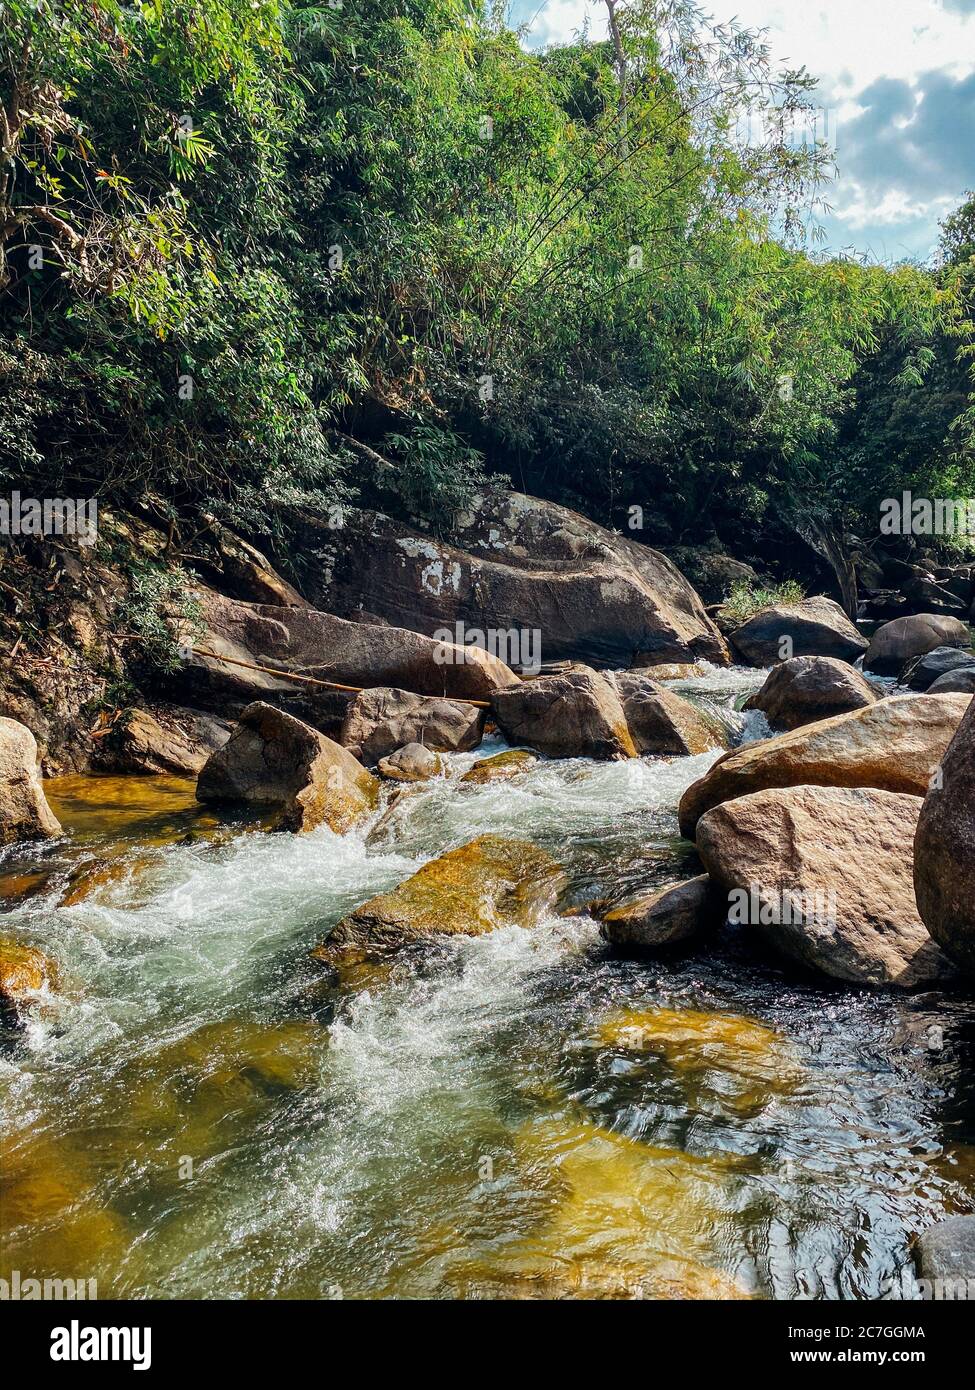 Ein kleiner Gebirgsfluss fließt zwischen großen Steinen in bergigen Gebieten durch den Wald. Natürliche Landschaft, mit einem sauberen Fluss eine schöne Landschaft, Stockfoto